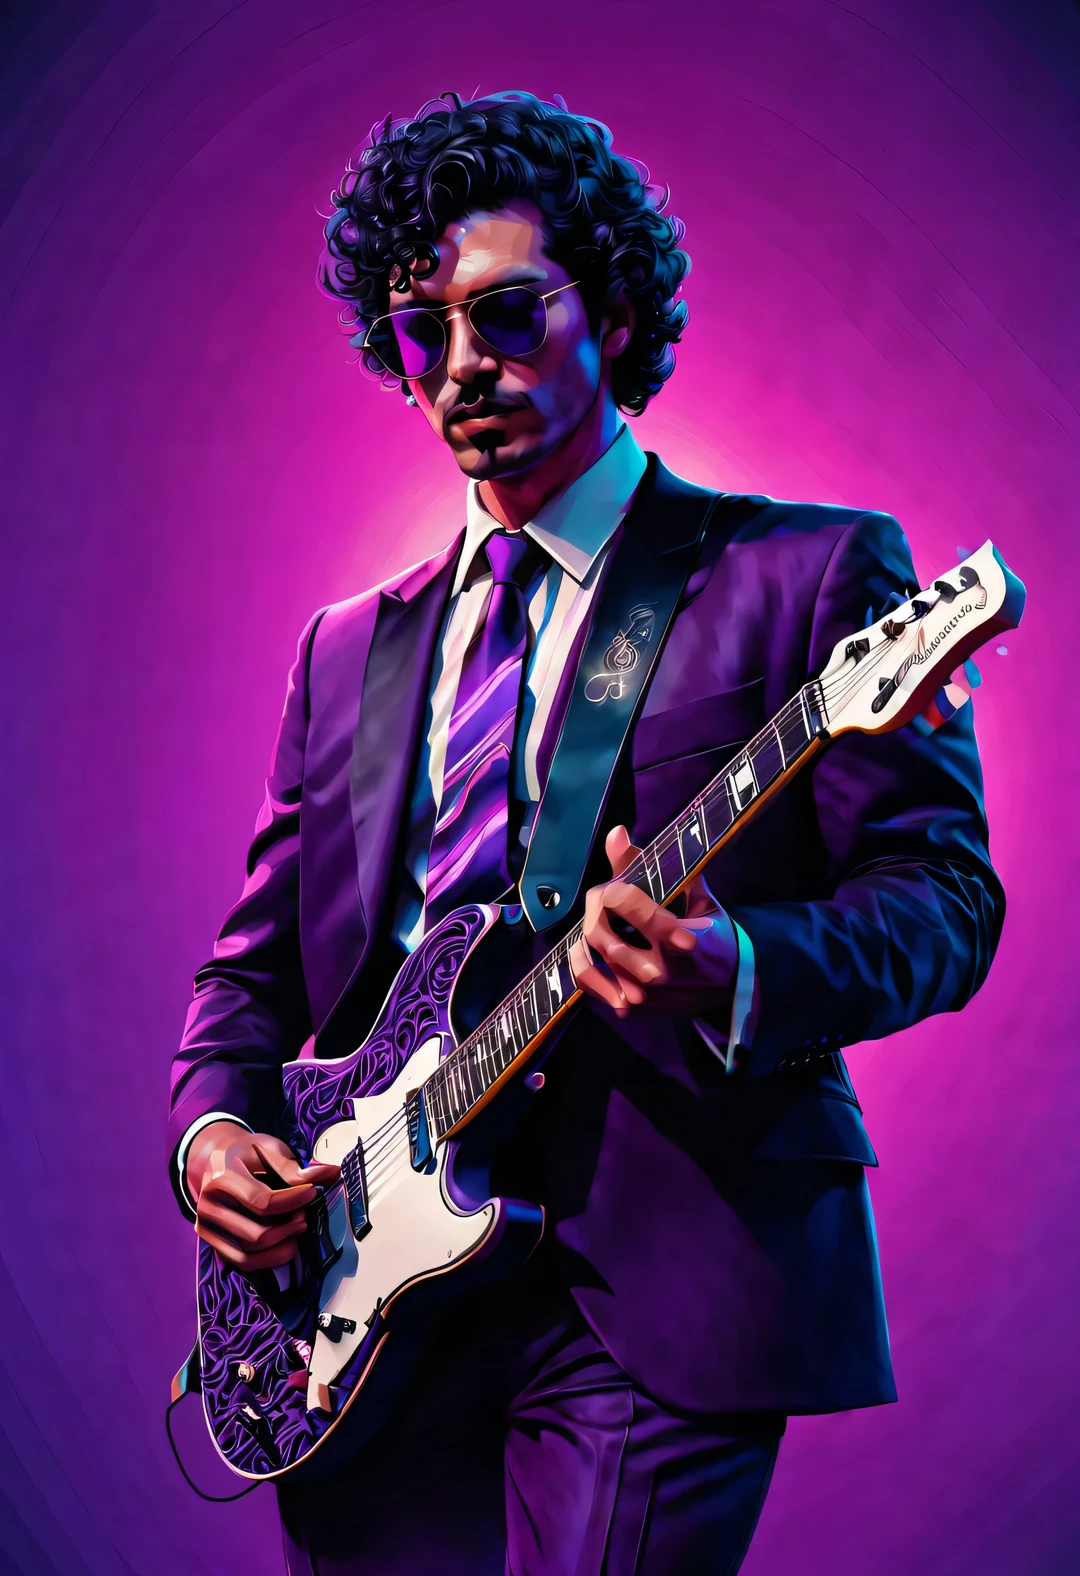 ベクターイラスト, ミニマリズム, 番号, ヴェイパーウェーブスタイル, 美しく細部までこだわったイラスト, もう少し紫色，
1980年代のアメリカのカラス柄の黒いスーツを着た男性、サングラスをかけエレキギターを弾く80年代の男性.,短い黒の巻き毛， ドラマチックな照明, アートステーションのトレンド, 受賞歴のある, アイコンは非常に詳細です